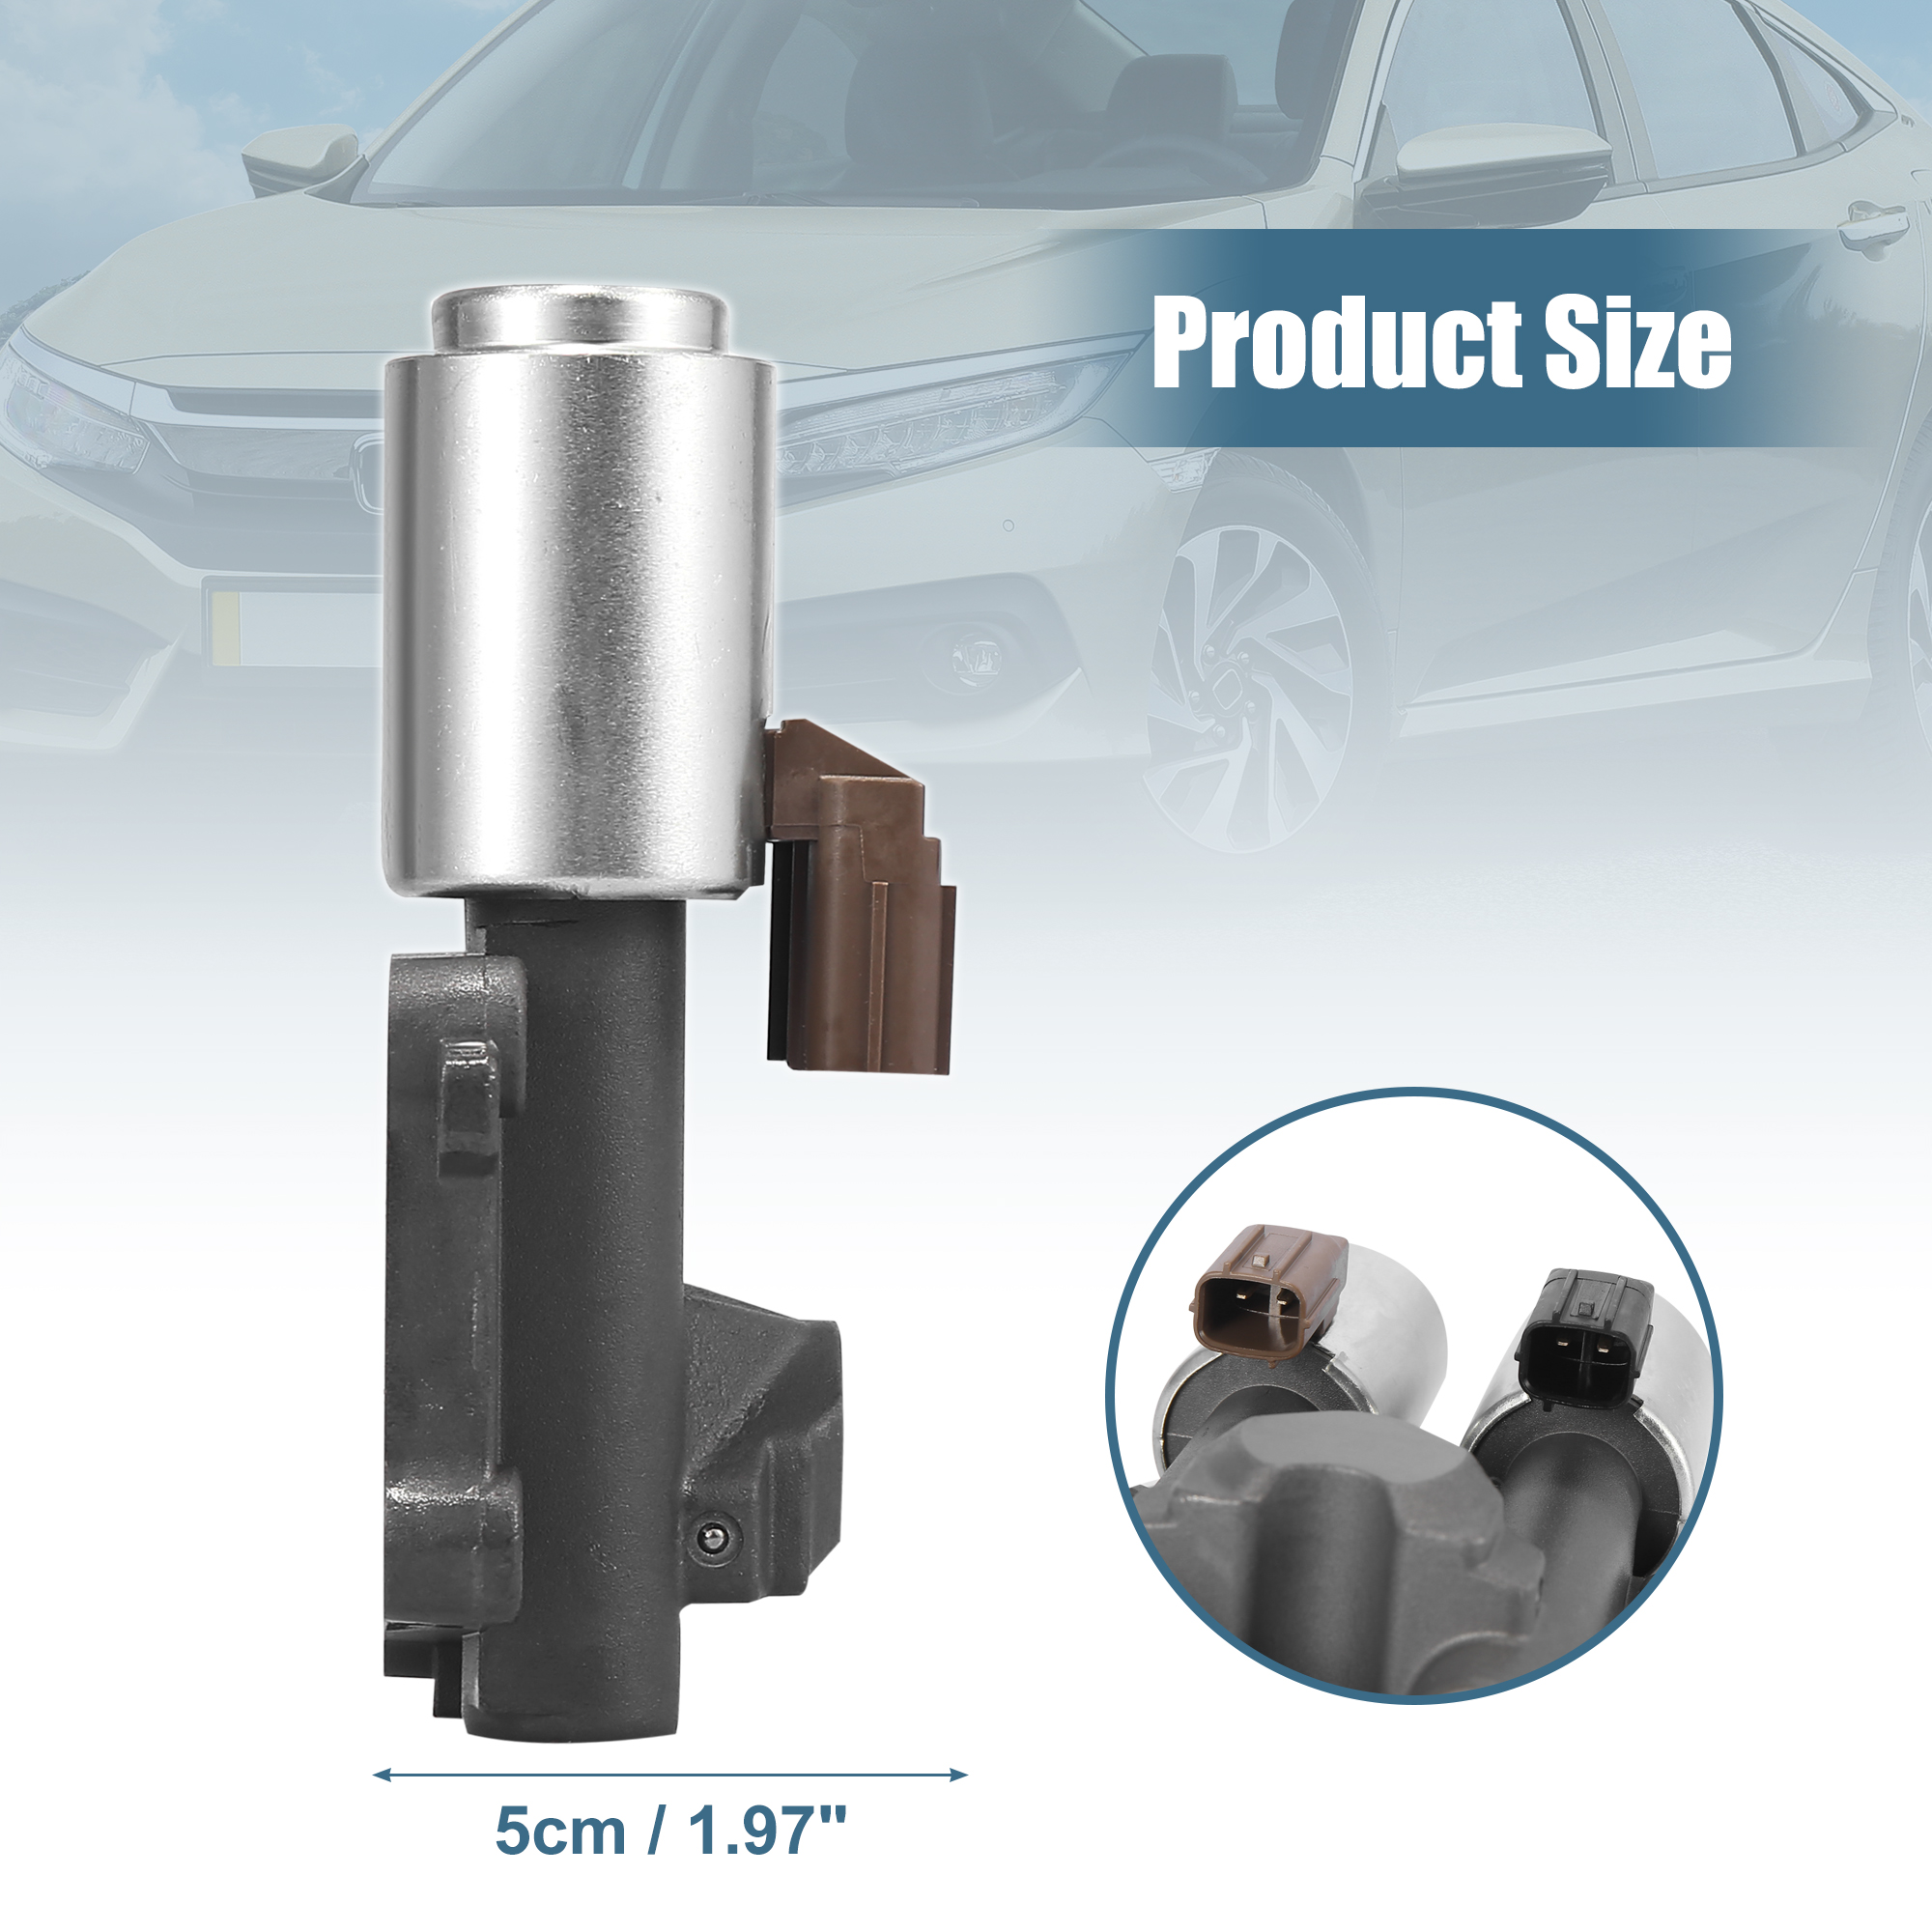 Unique Bargains Transmission Dual Linear Shift Solenoid Valve 28260-RPC-004 for Honda Civic Fit